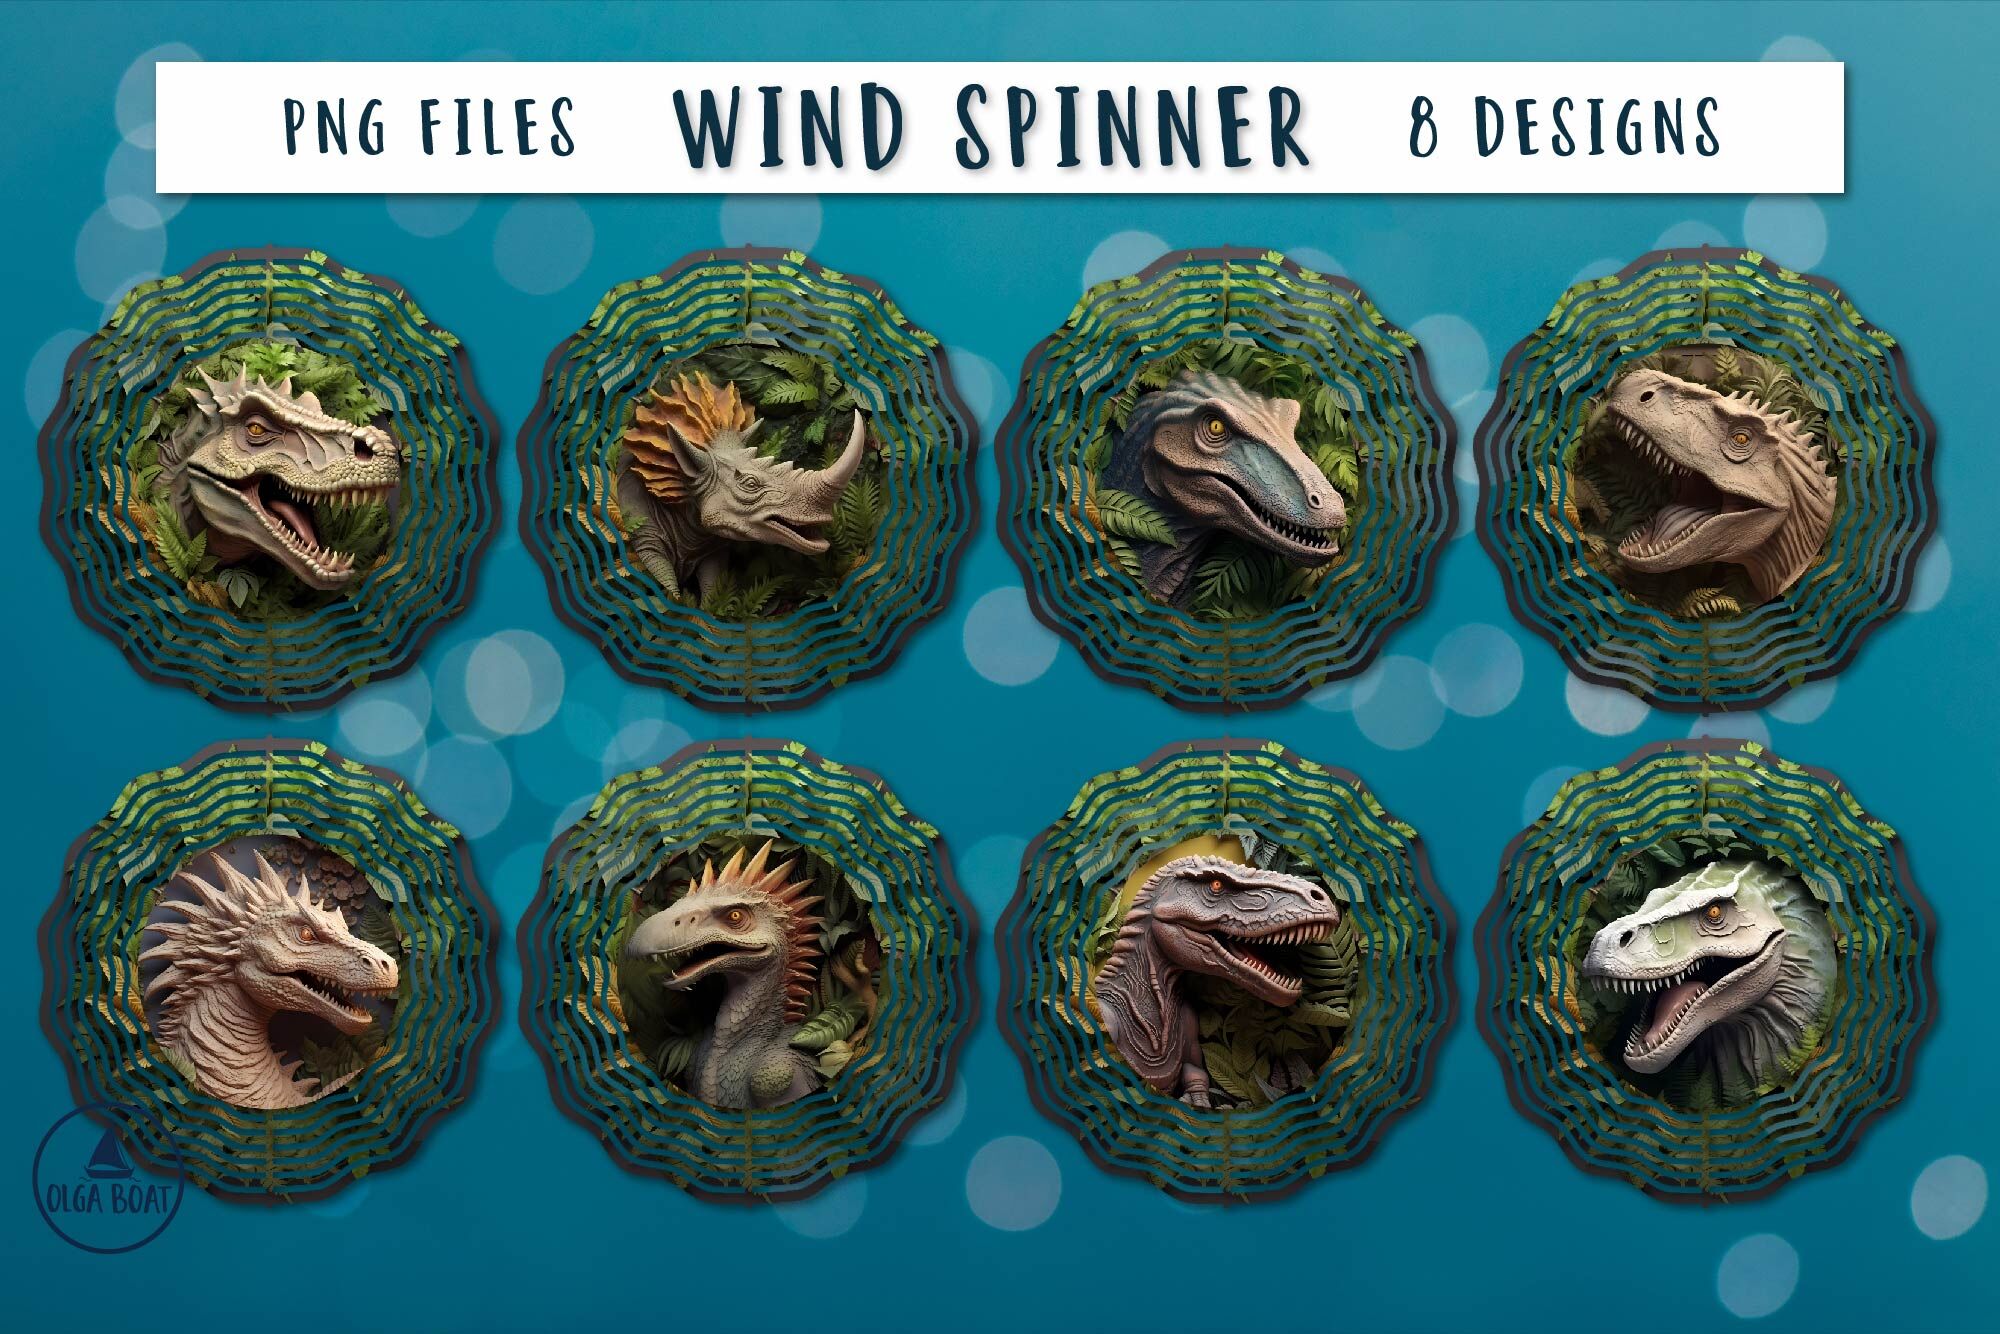 3d Dinosaur wind spinner | Trex dinosaur sublimation By Olga boat ...